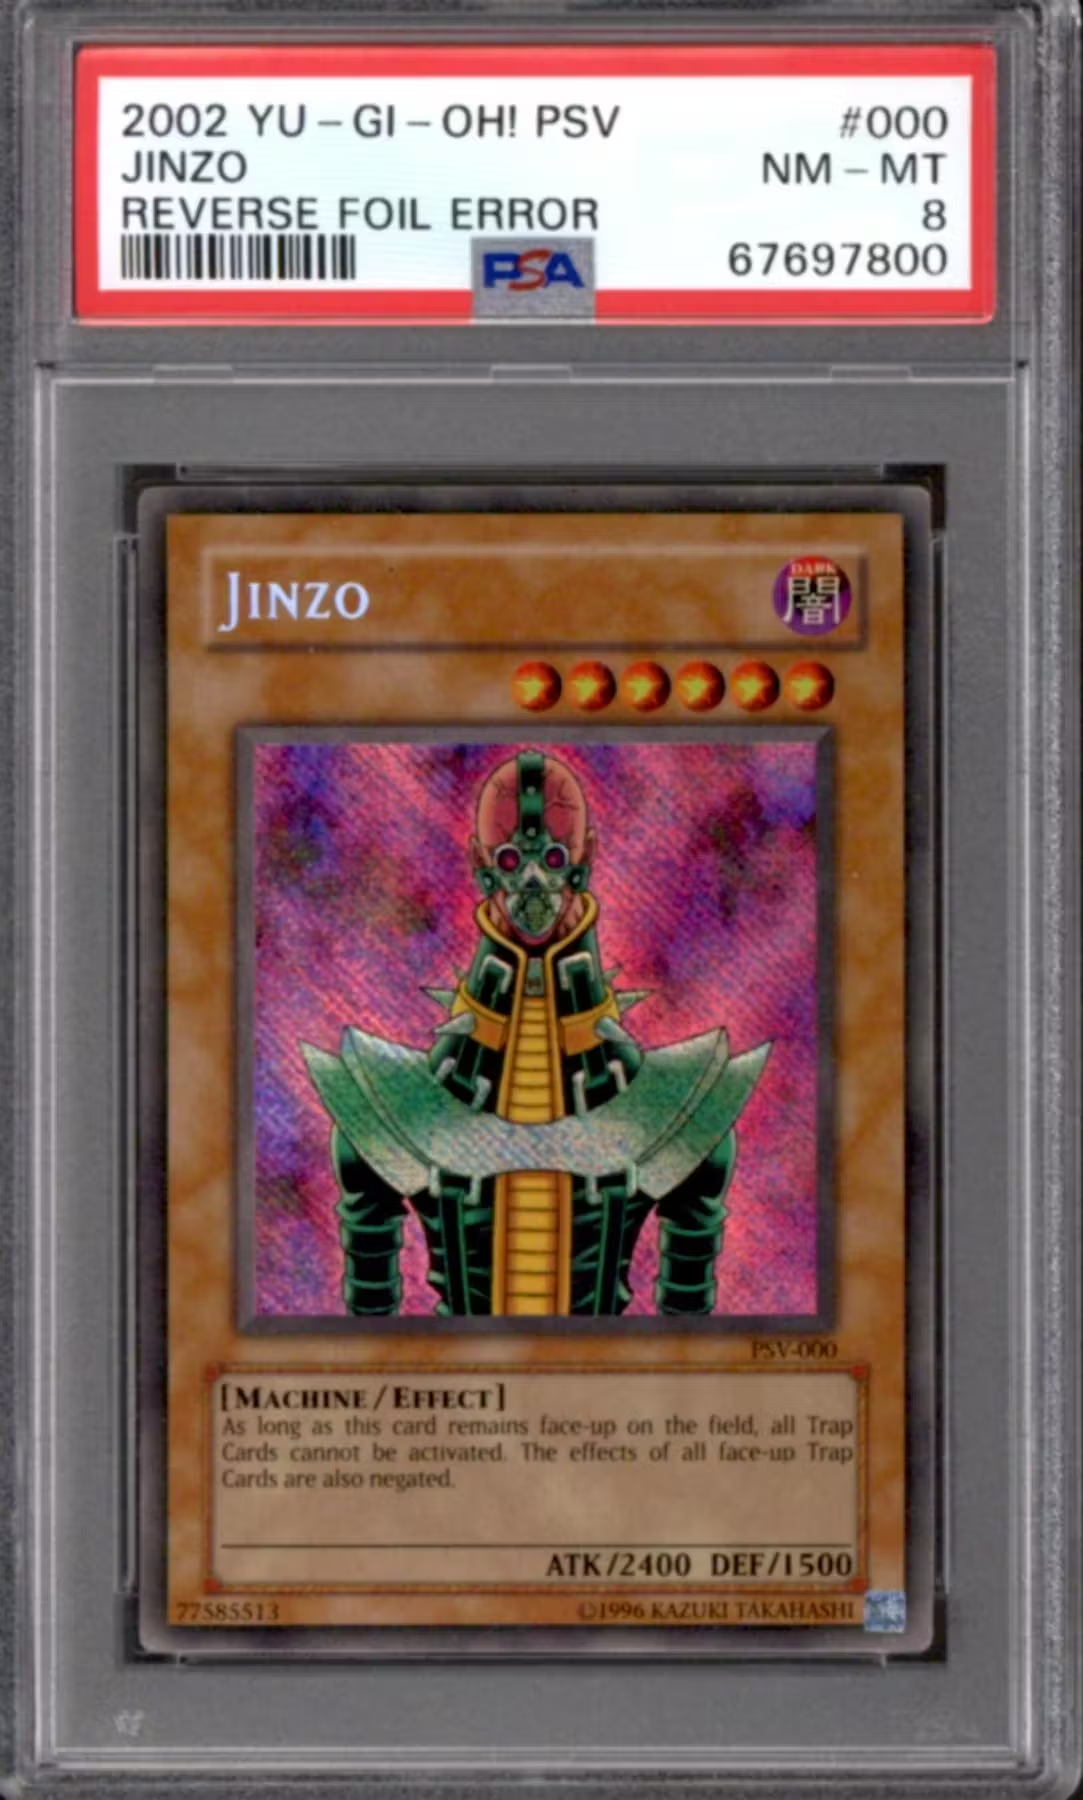 Yugioh Pharaoh's Servant Reverse Foil Error Jinzo PSV-000 PSA 8